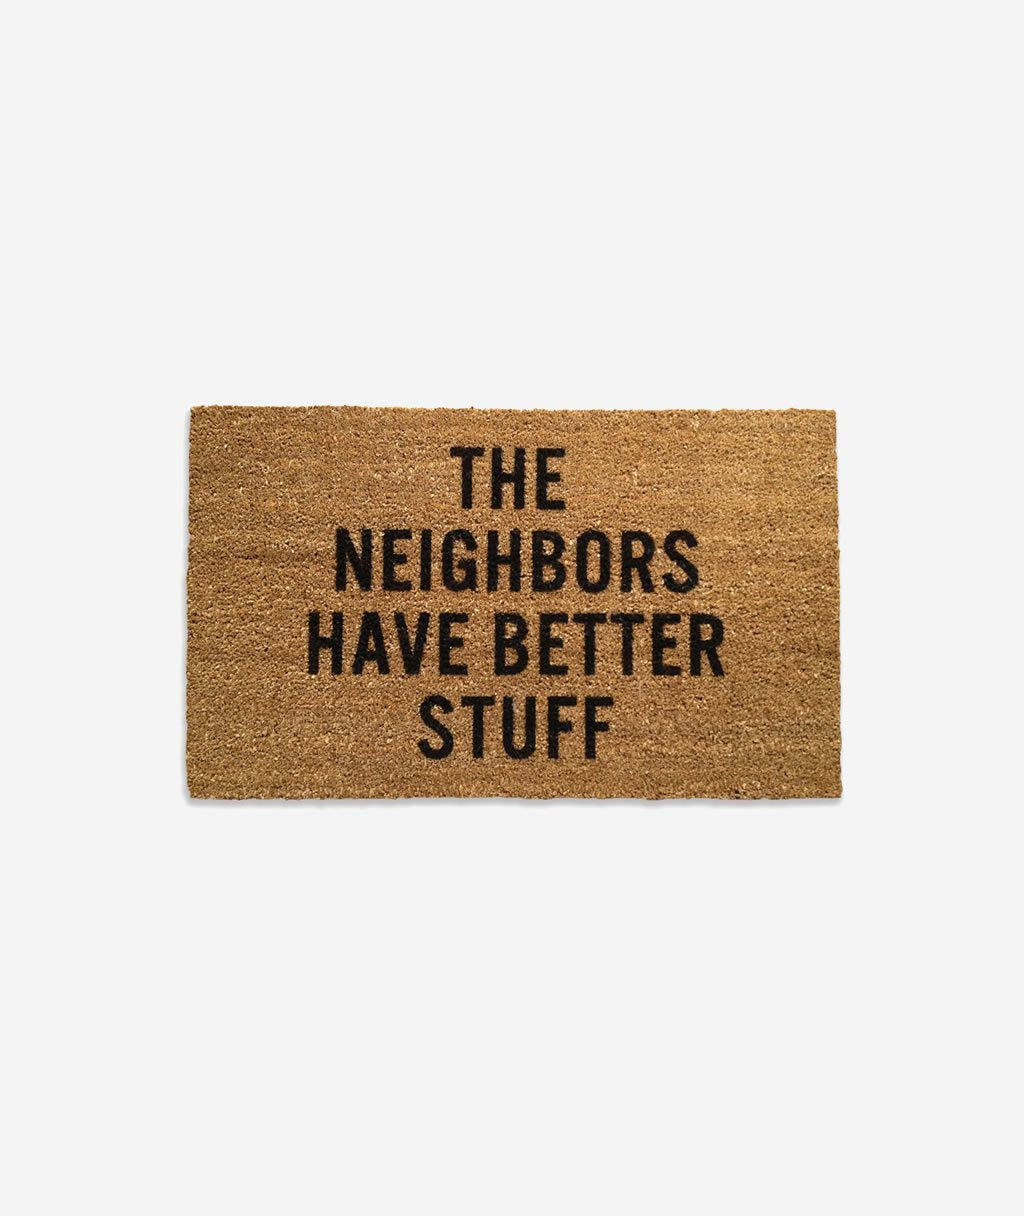 The Neighbors Have Better Stuff, Doormat